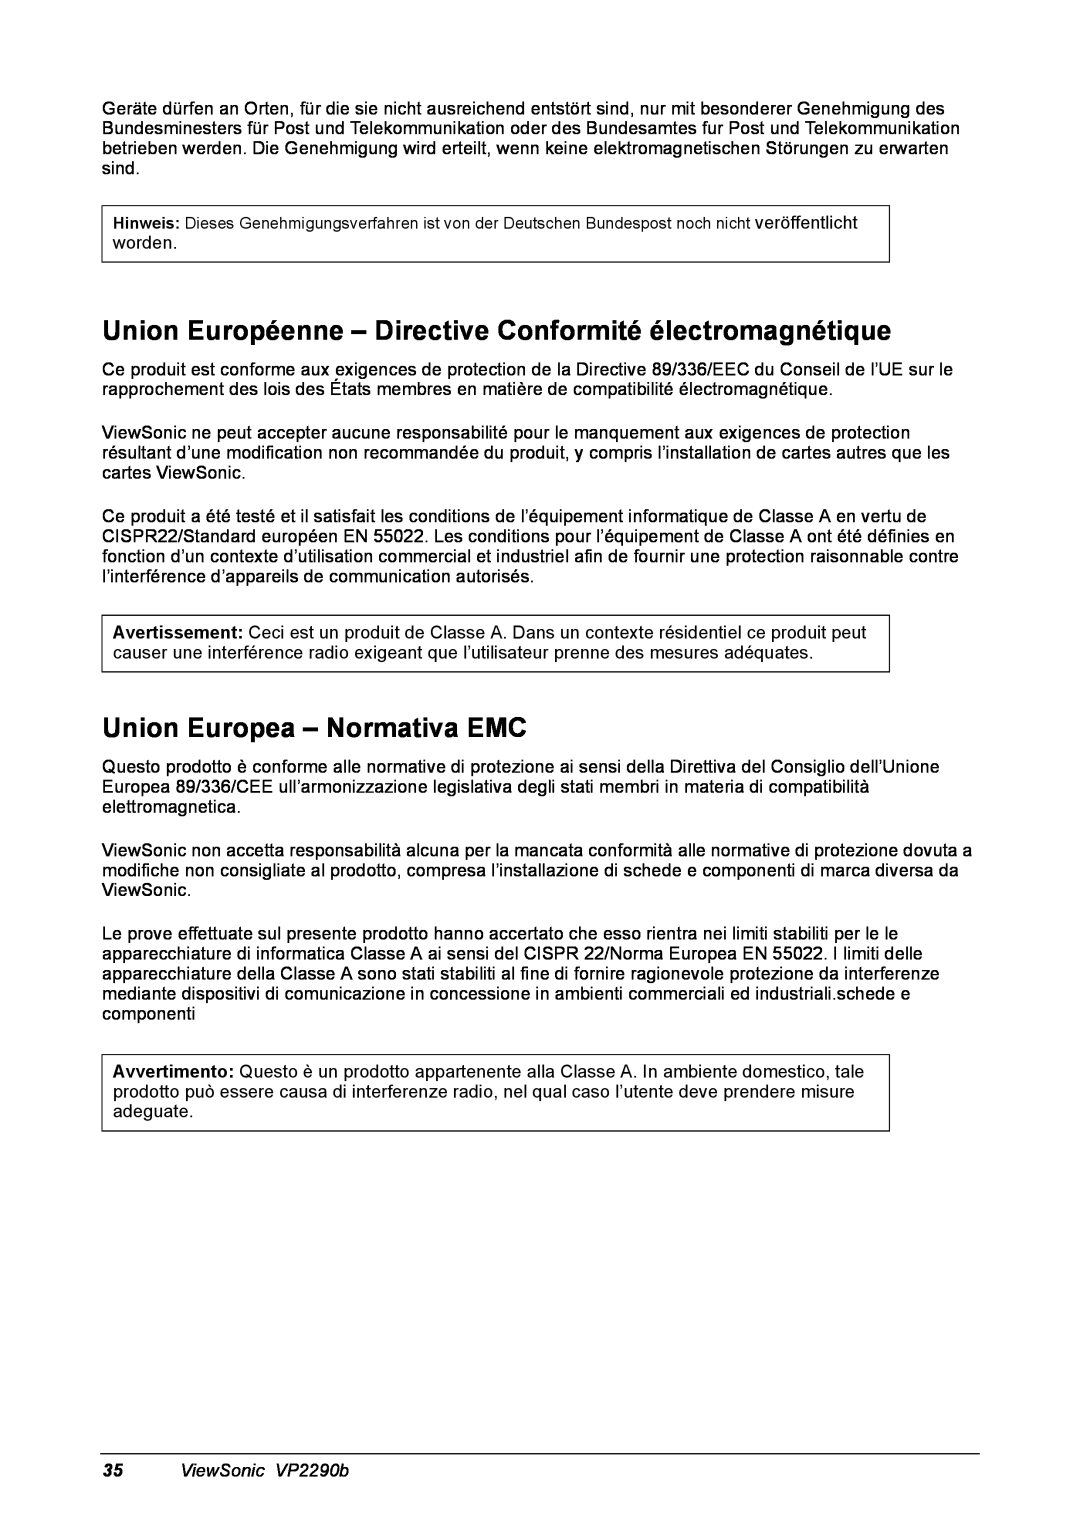 ViewSonic VP2290B manual Union Européenne - Directive Conformité électromagnétique, Union Europea - Normativa EMC 